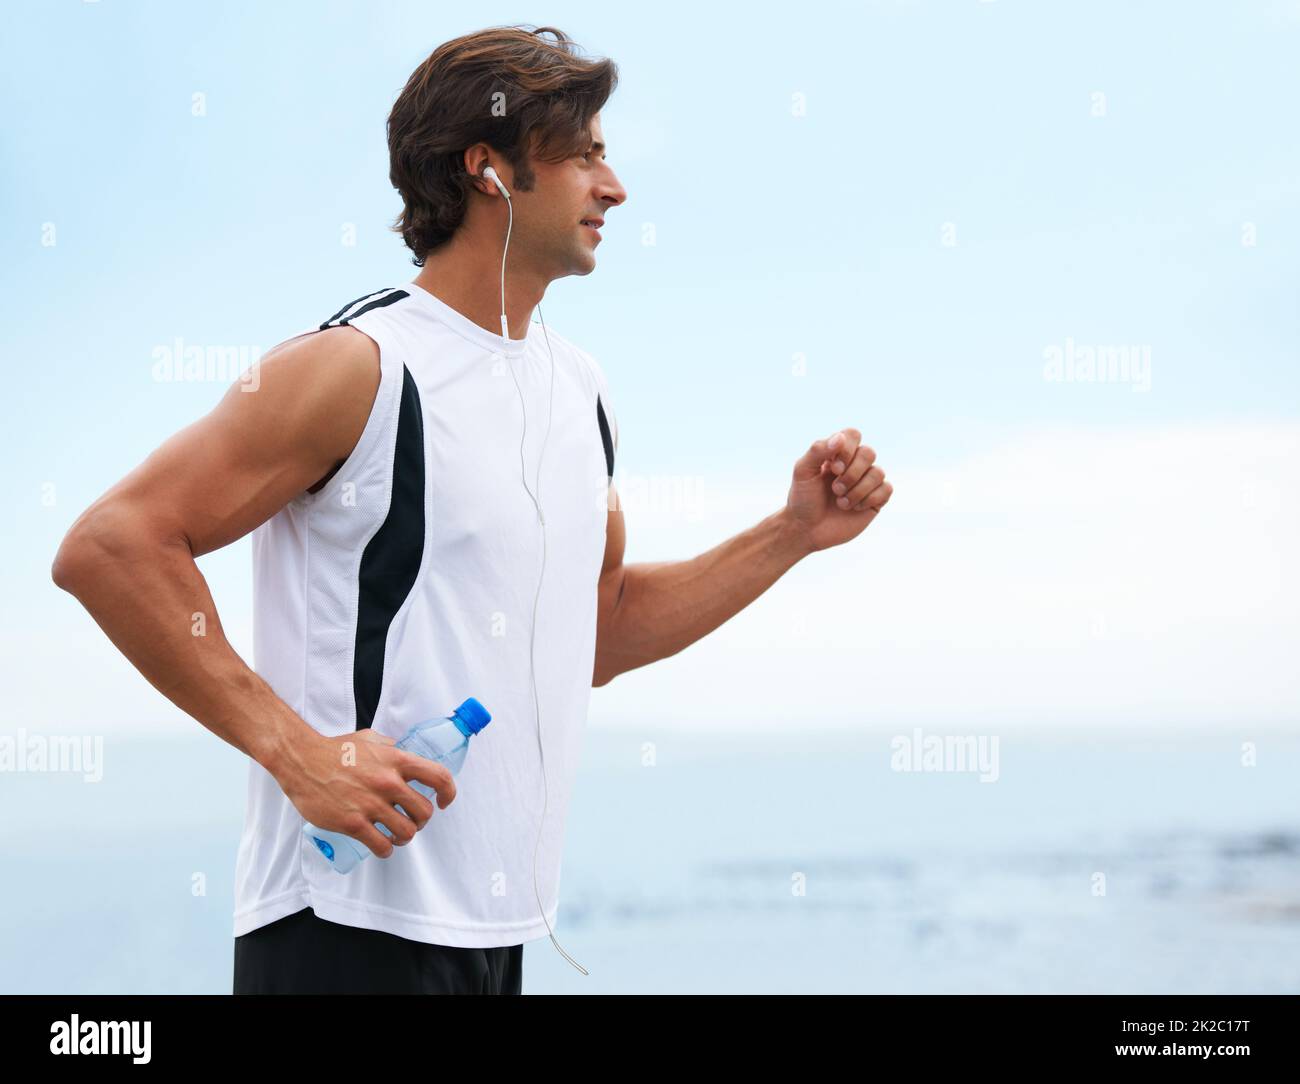 Nichts kann ihn zurückhalten. Profilansicht eines gutaussehenden Mannes, der eine Wasserflasche hält, laufen geht und Musik hört - Copyspace. Stockfoto